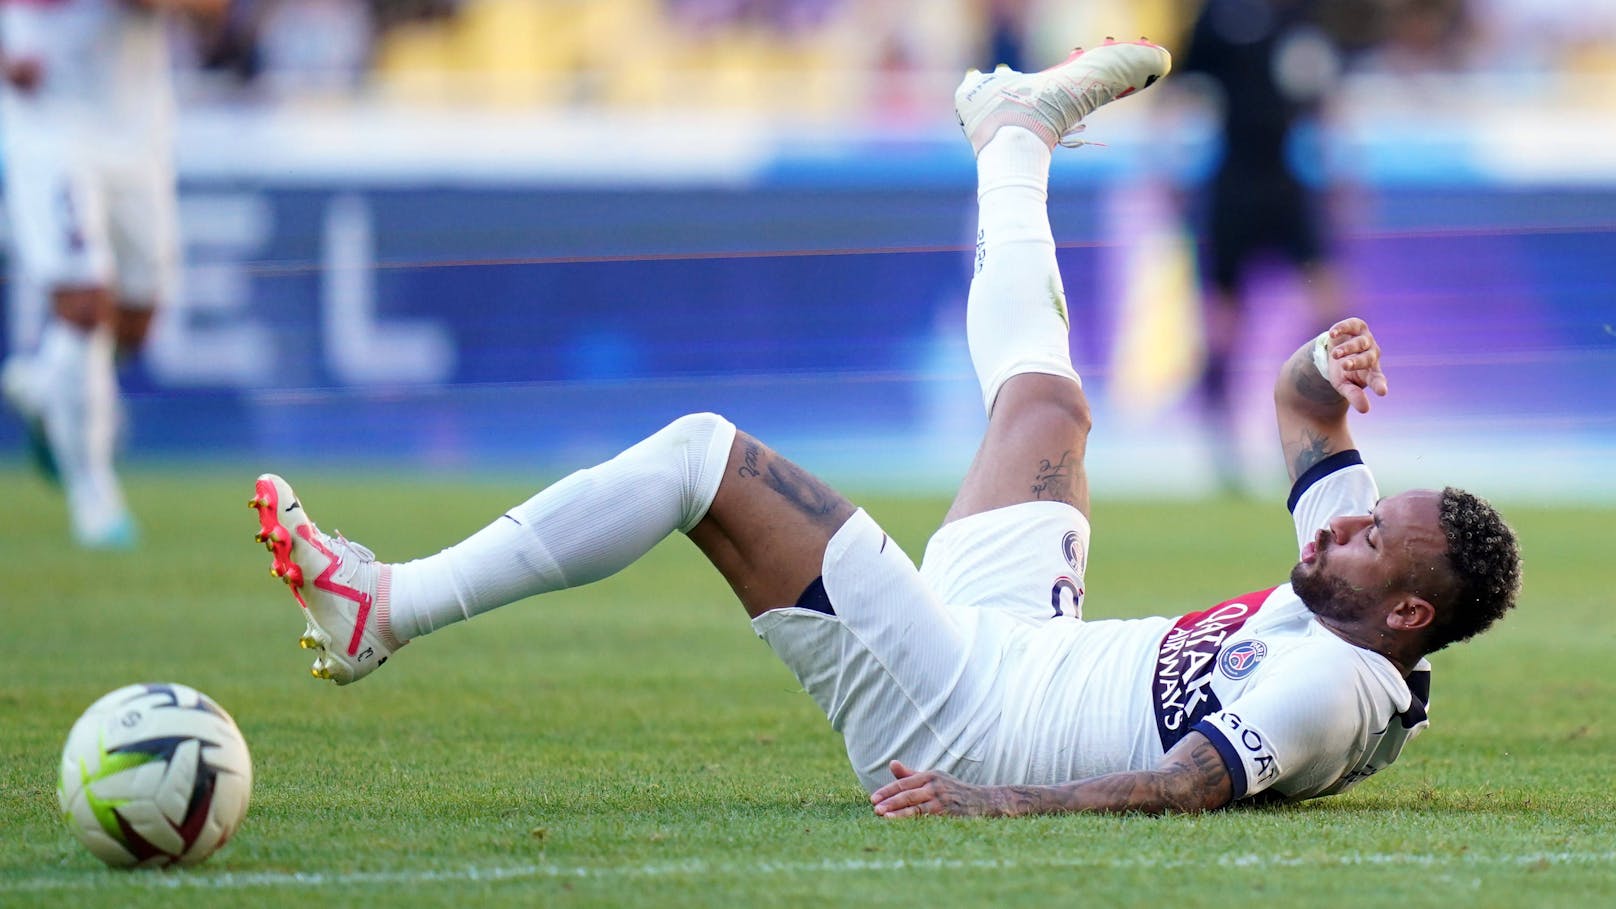 Insider enthüllt: Neymar kam oft betrunken zum Training